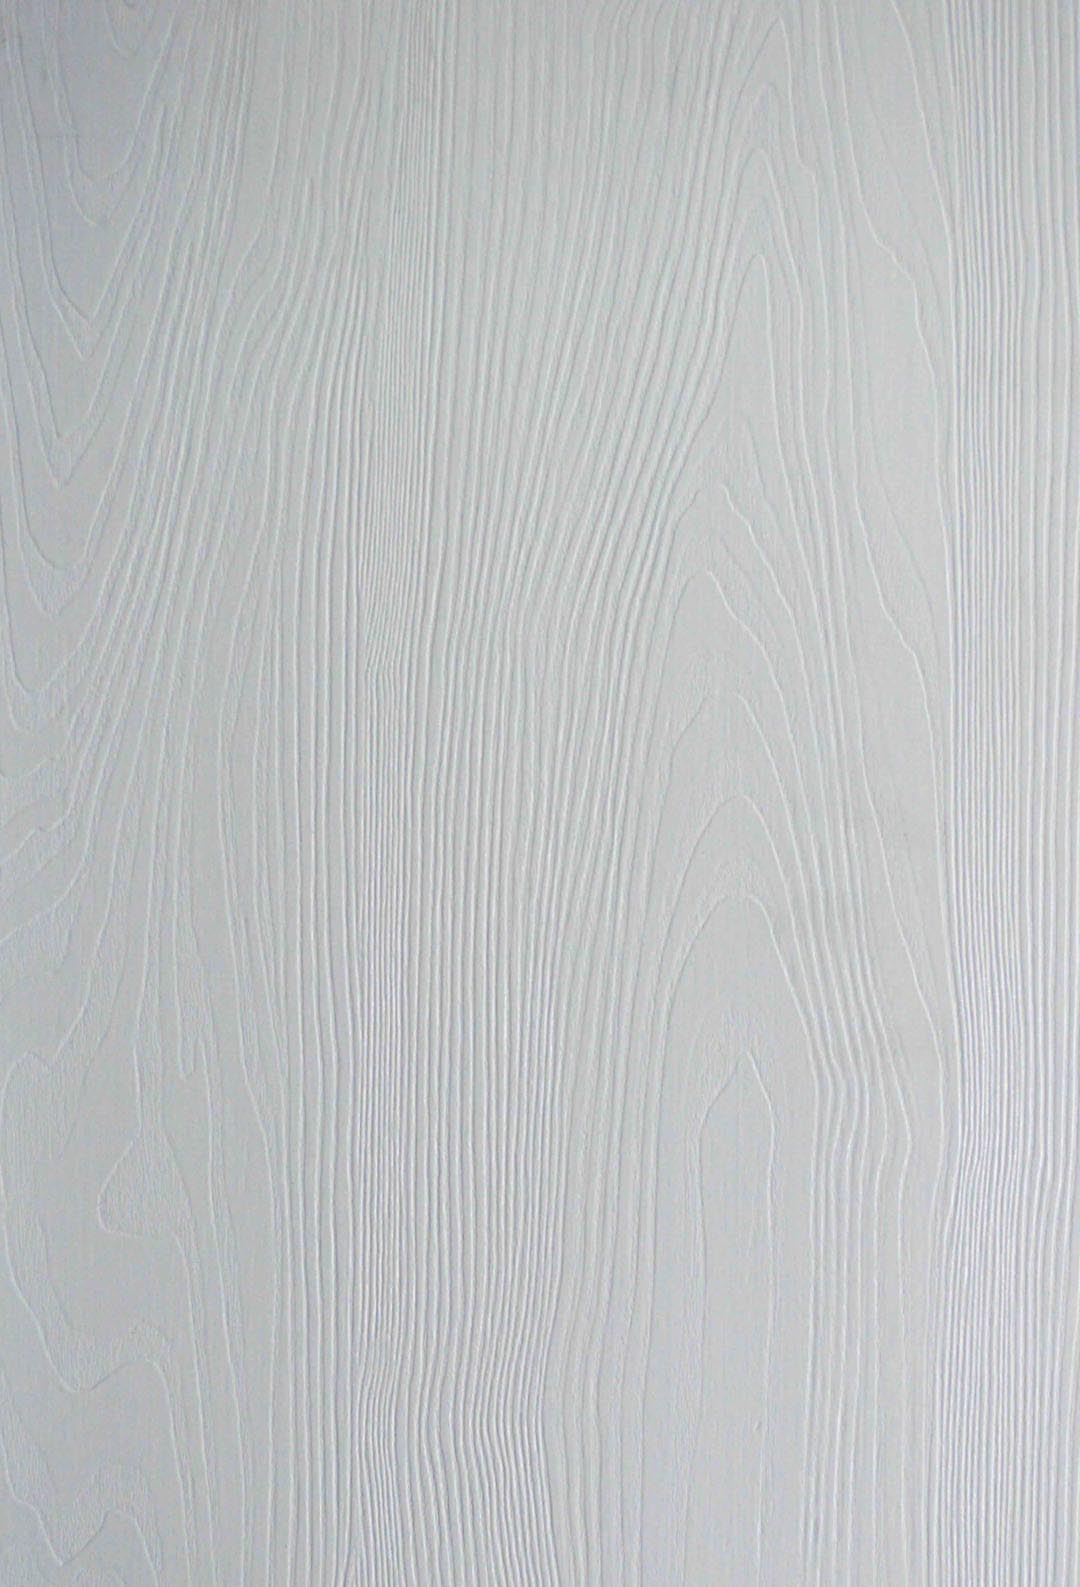 生态板杉木新料木工板免漆板暖白小浮雕三聚氰胺饰面板优现货包邮-阿里巴巴